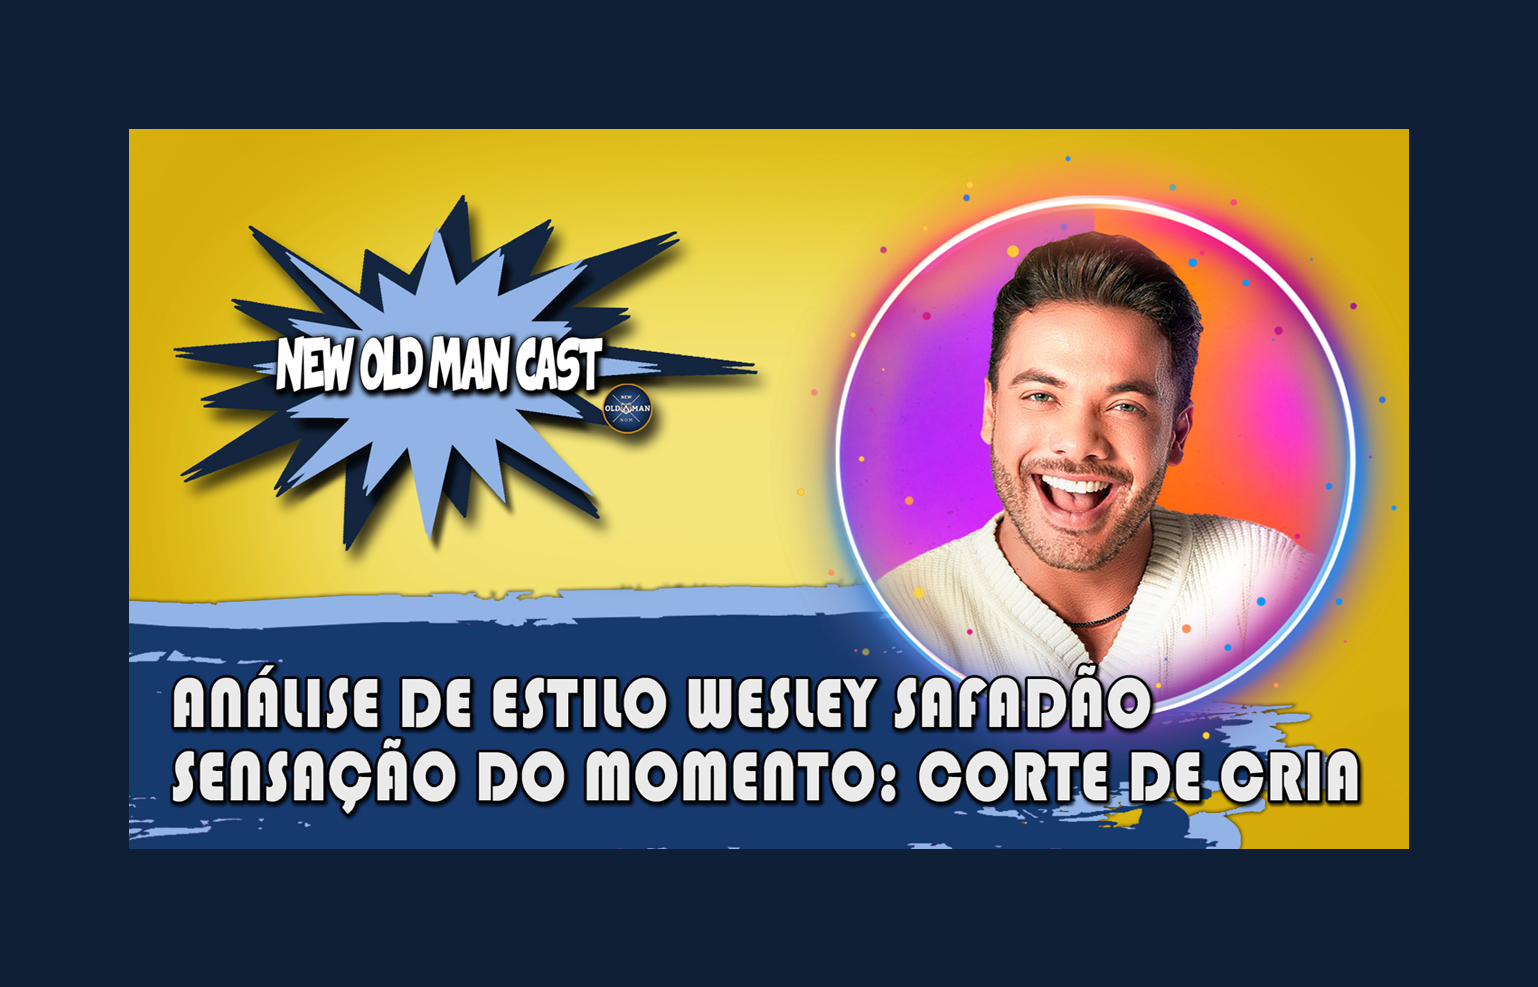 New Old Man Cast #85 - A Sensação Do Momento CORTE DE CRIA - Análise de Estilo WESLEY SAFADÃO